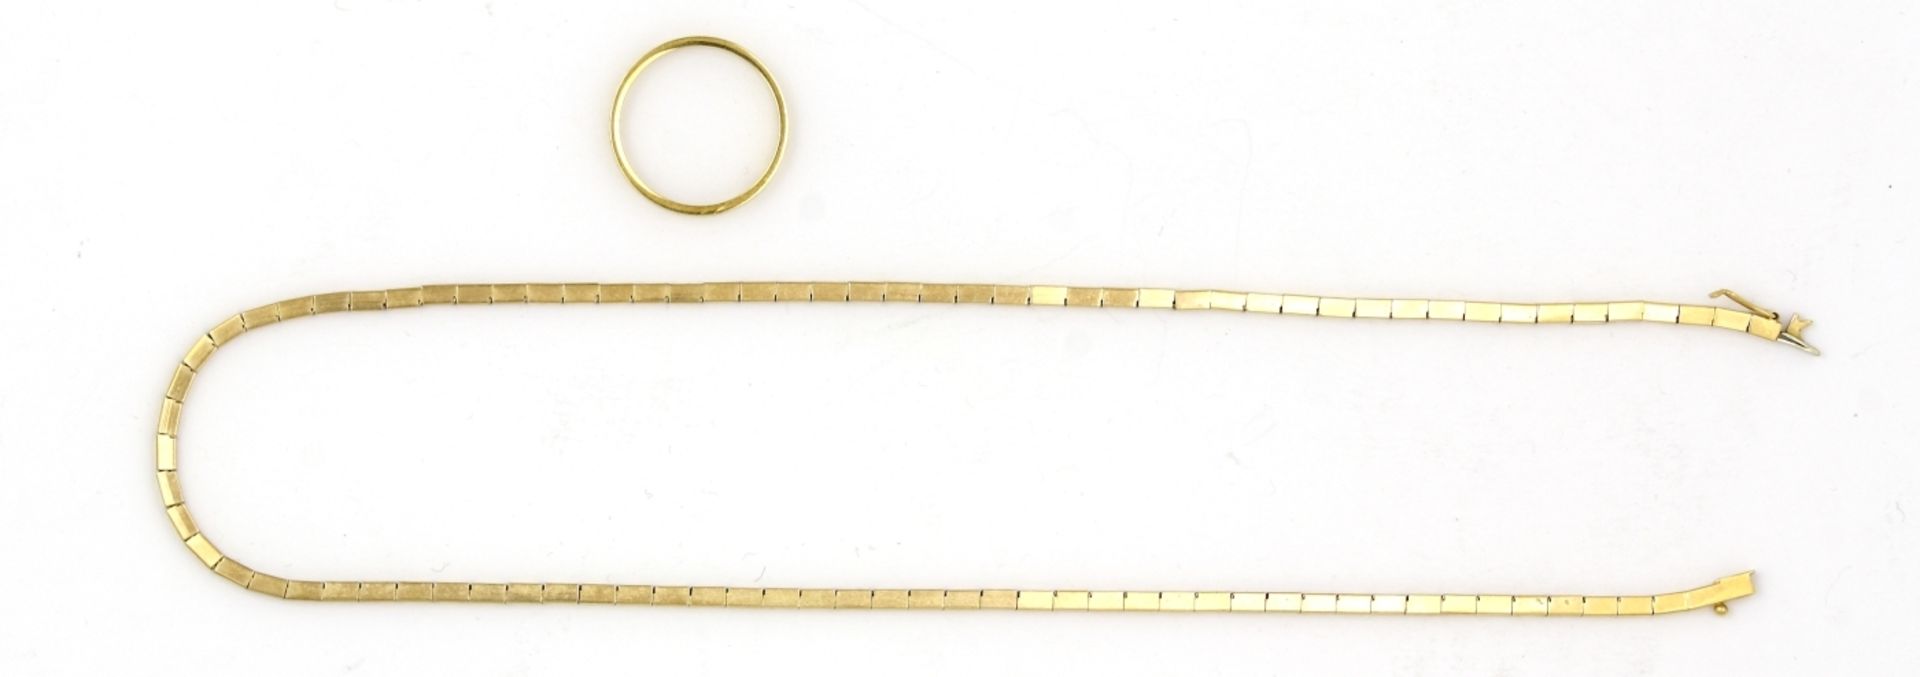 Halskette und Ring, 750er GG. Gewicht